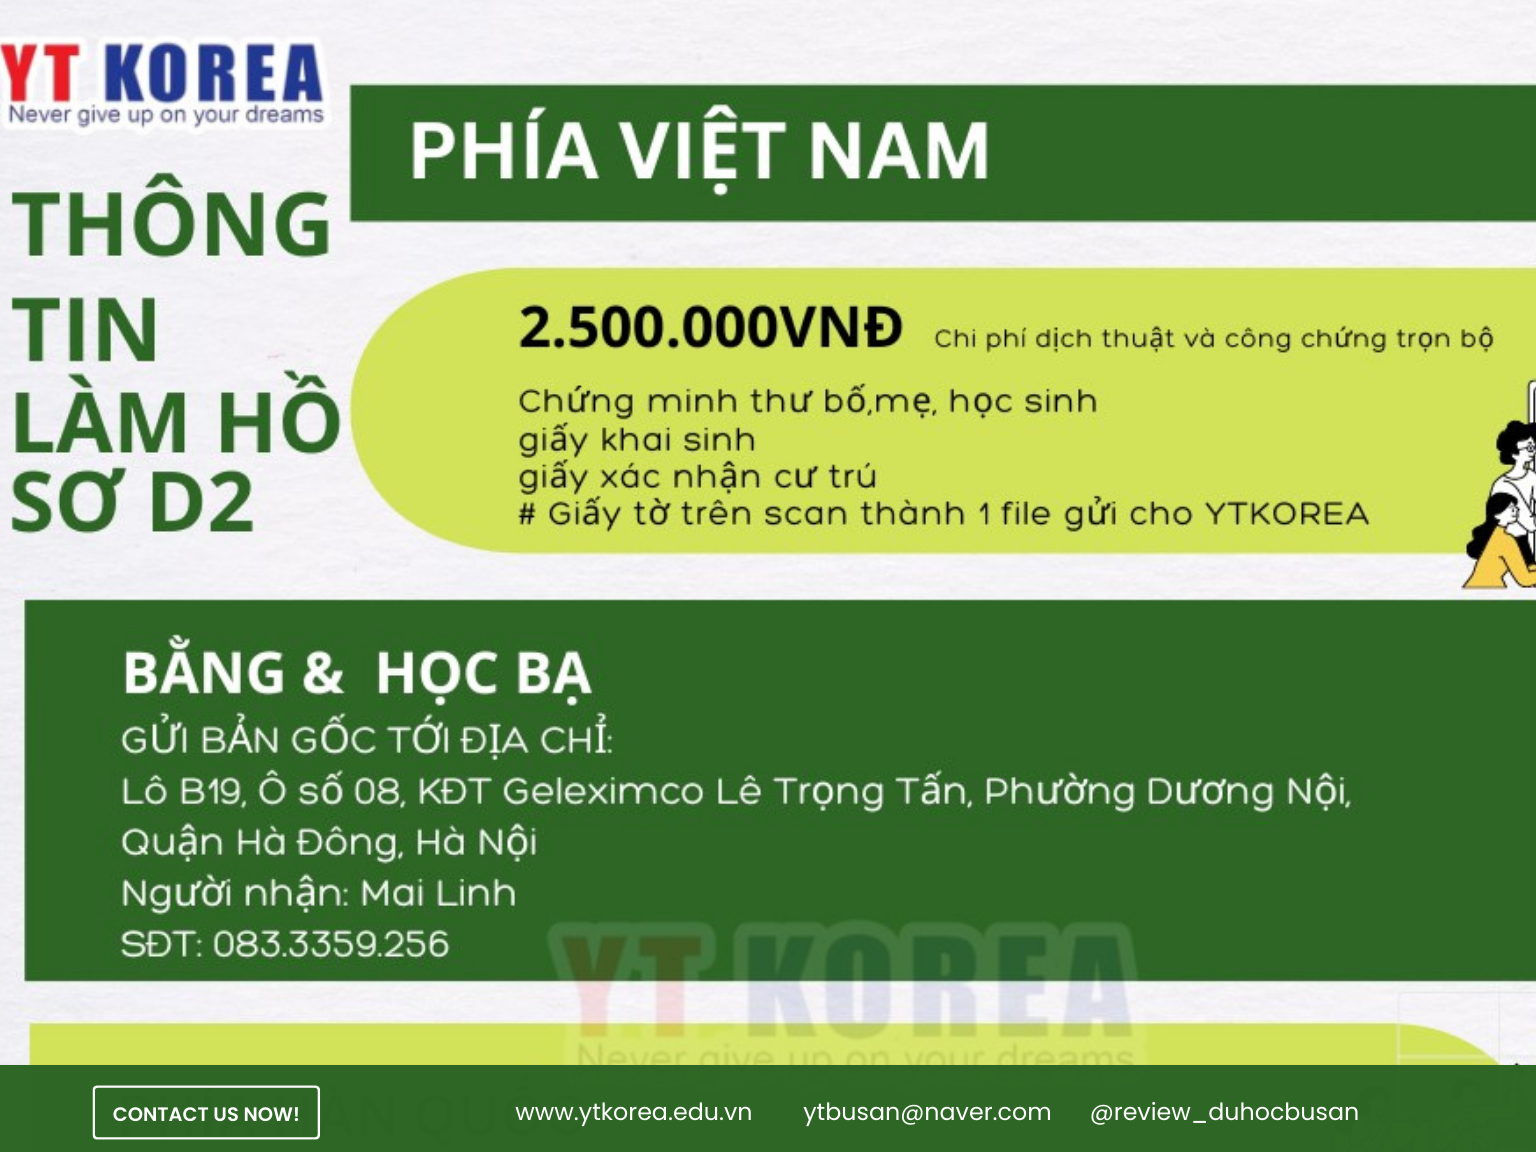 Phía Việt Nam chi phí lên chuyên ngành D2